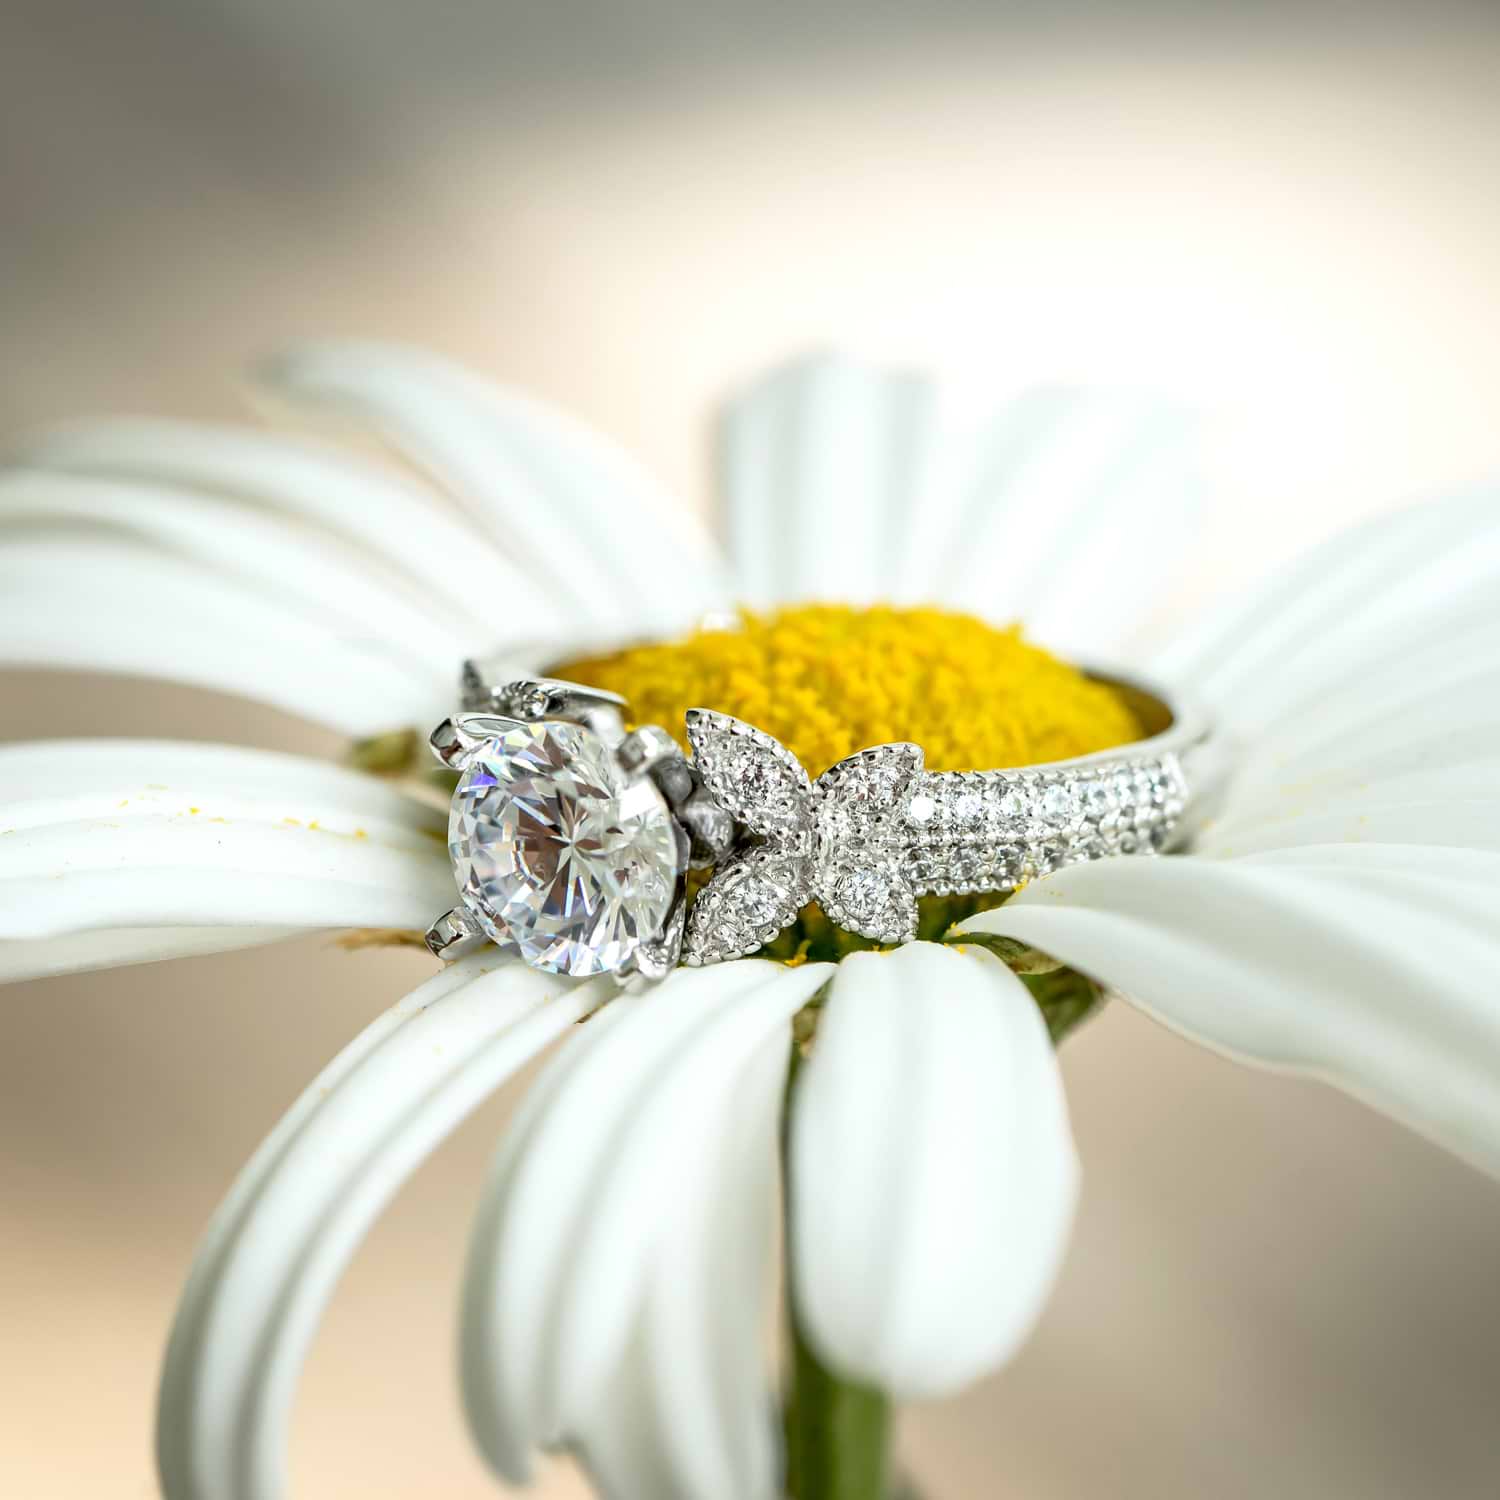 Butterfly Milgrain Diamond Engagement Ring 14K White Gold (0.25ct)